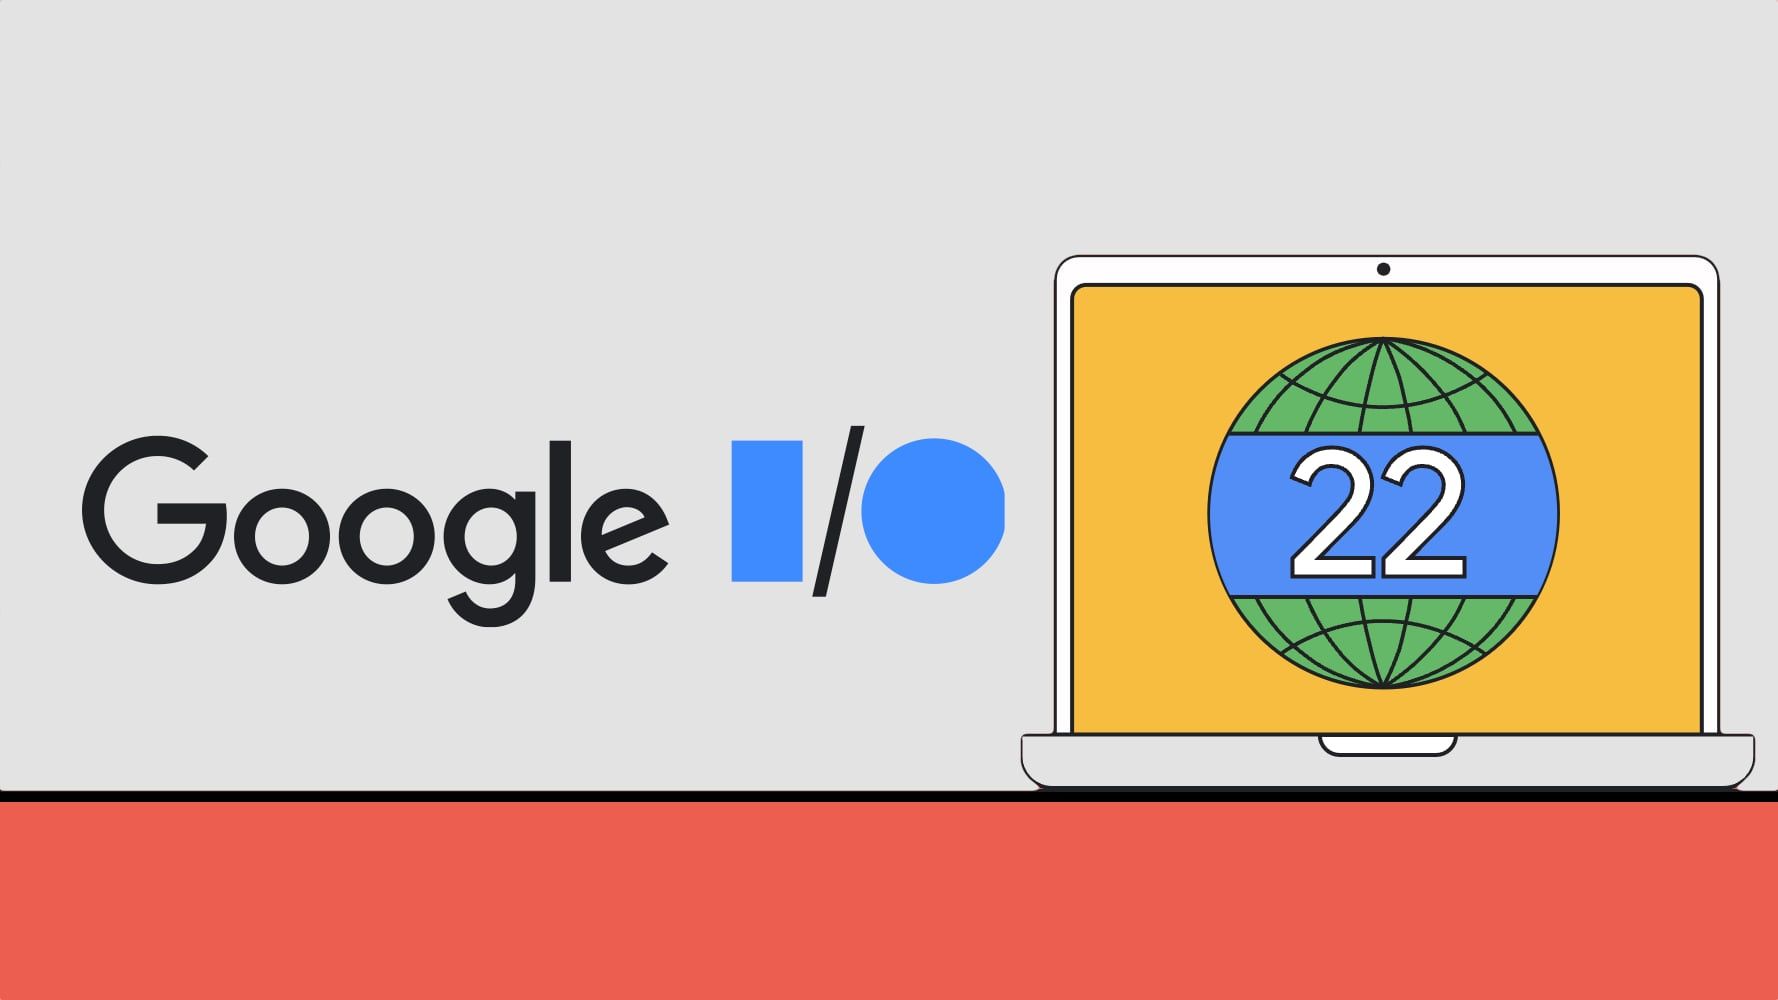 Aujourd'hui, nous allons couvrir Google I/O 2022, l'inscription, le calendrier et ce qui sera annoncé comme Google Pixel 6a si les rumeurs sont vraies.